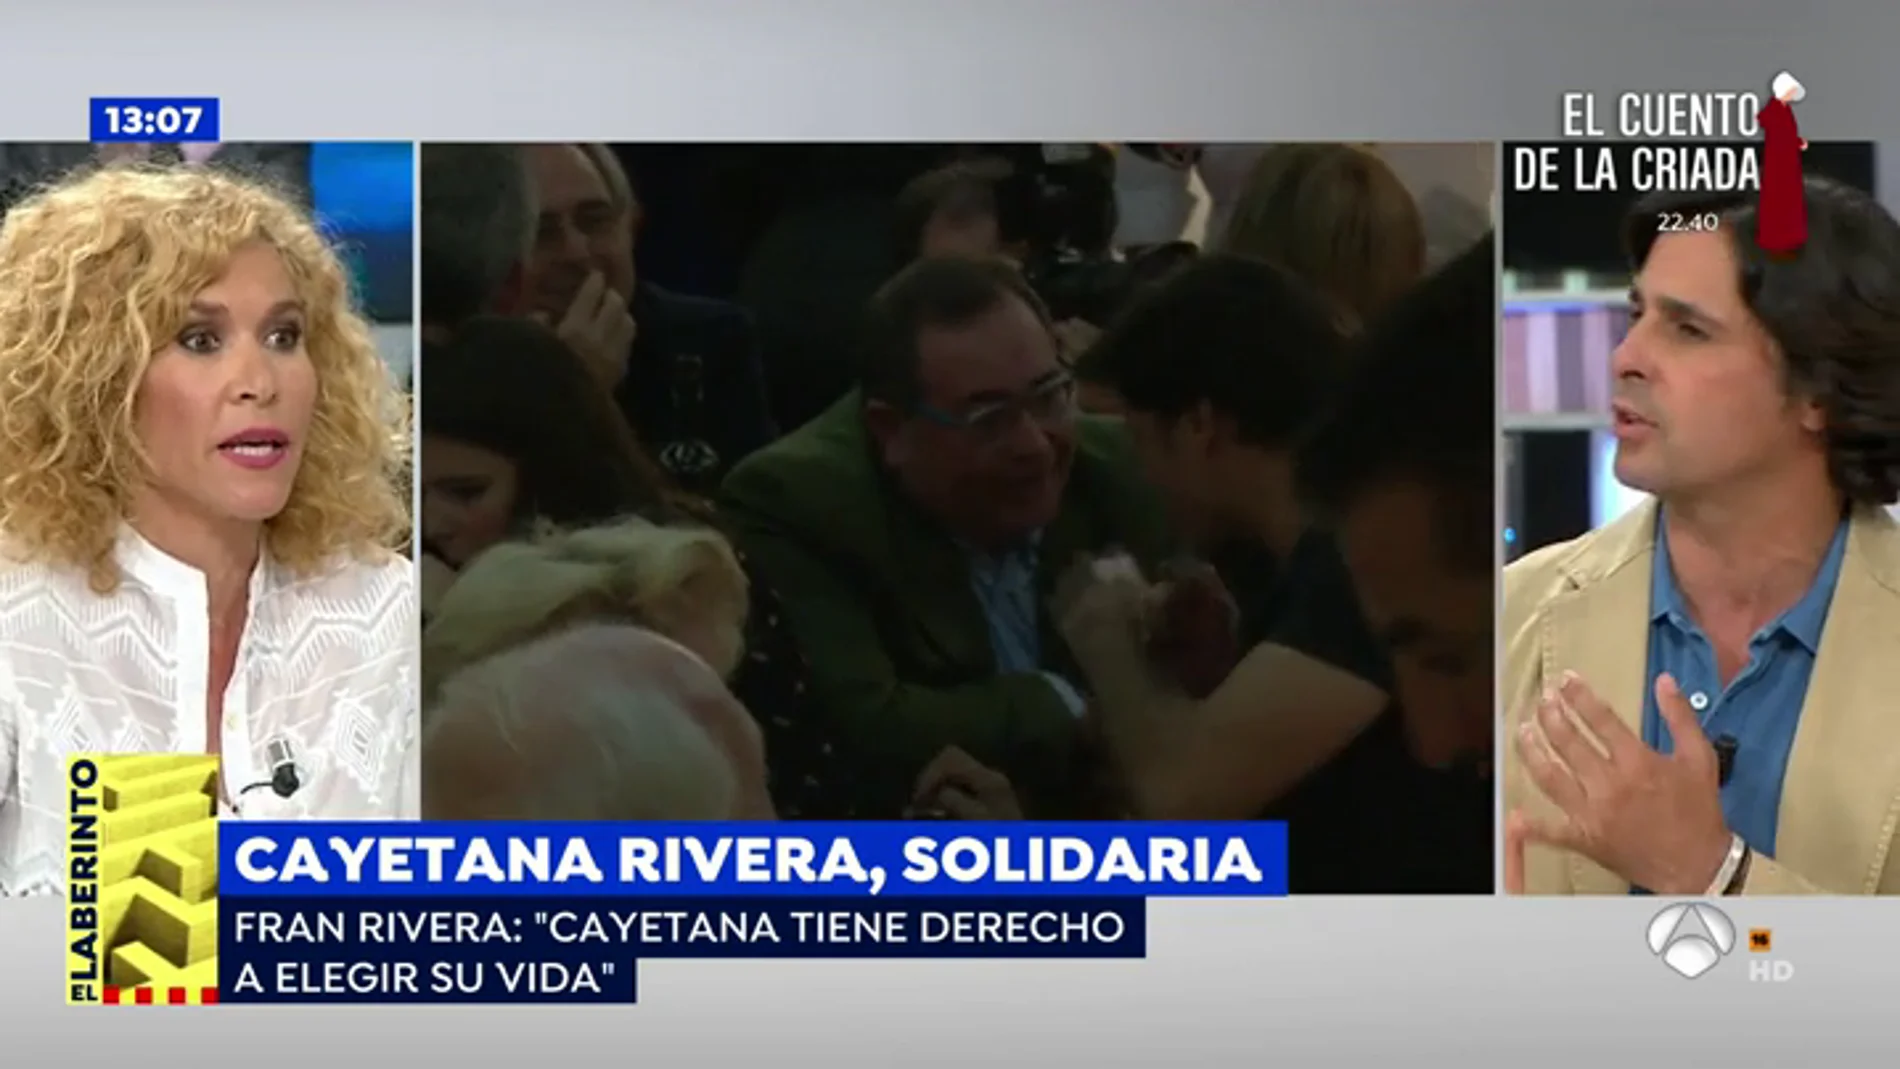   Rifirafe en plató entre Fran Rivera y Cristina Fernández: "No te permito que hables así de mi hija porque no tienes ni idea"